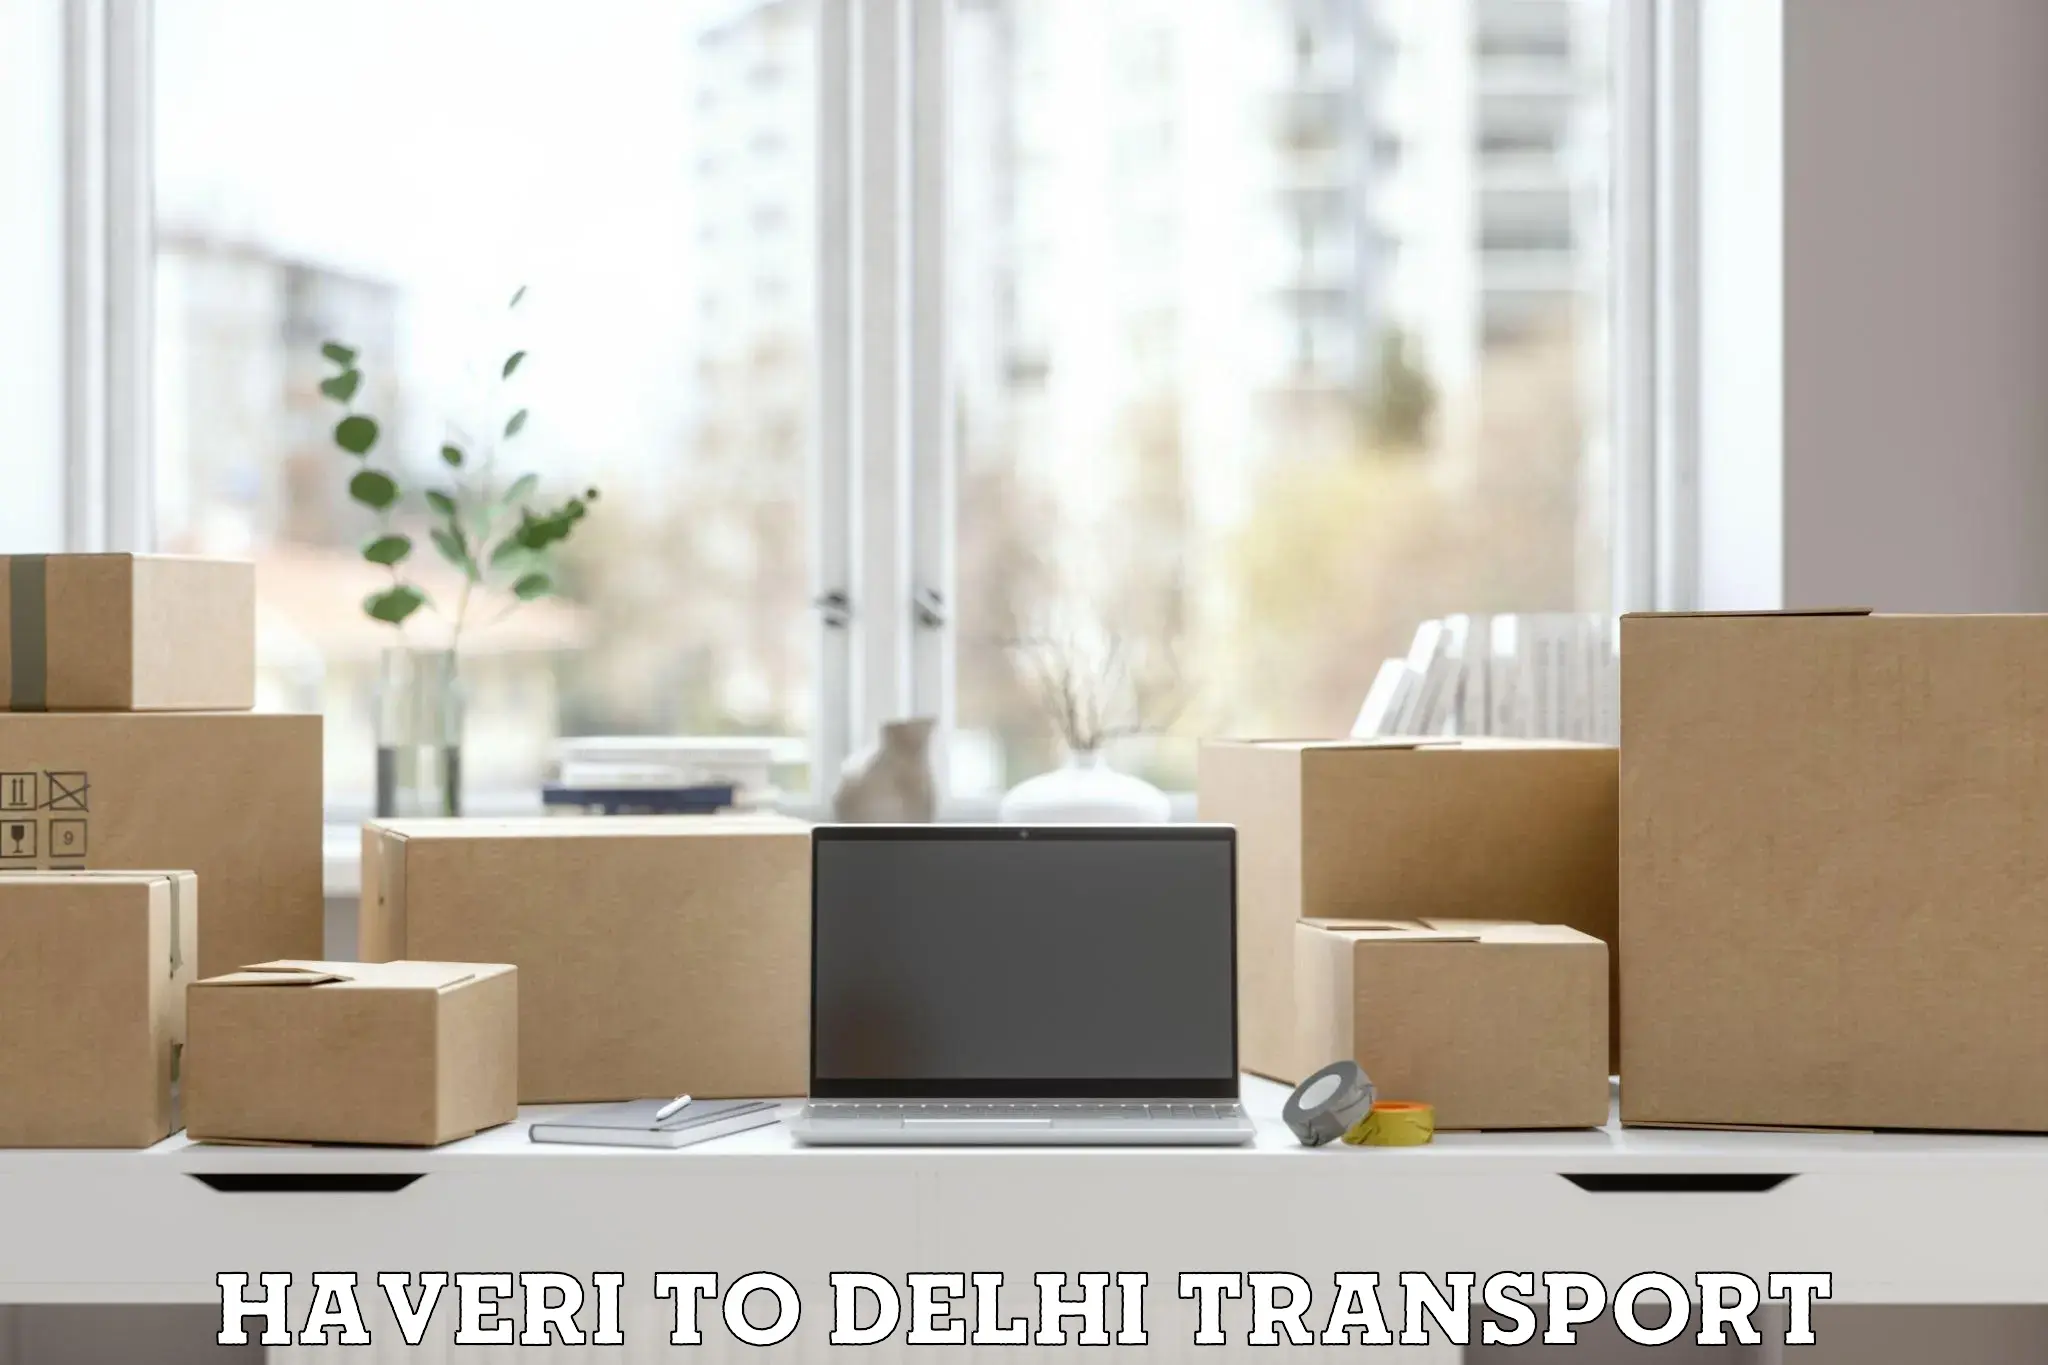 Express transport services Haveri to Delhi Technological University DTU